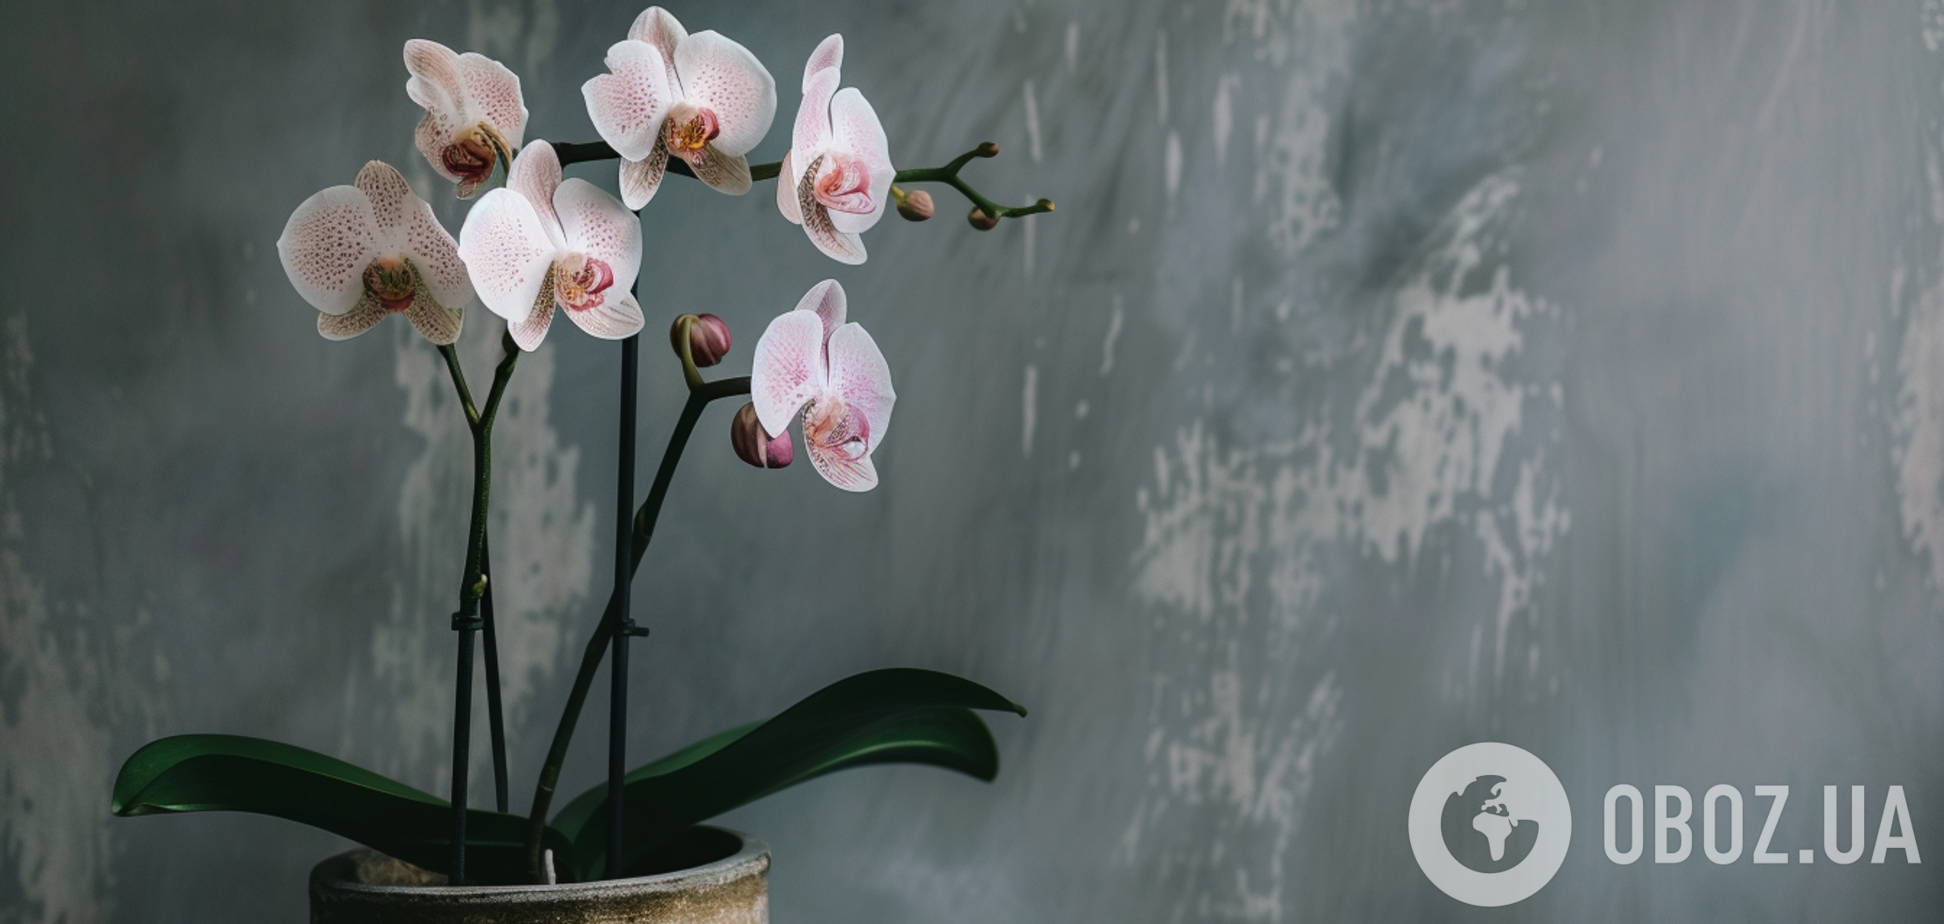 Как ухаживать за привередливыми орхидеями в феврале и не 'убить' цветок